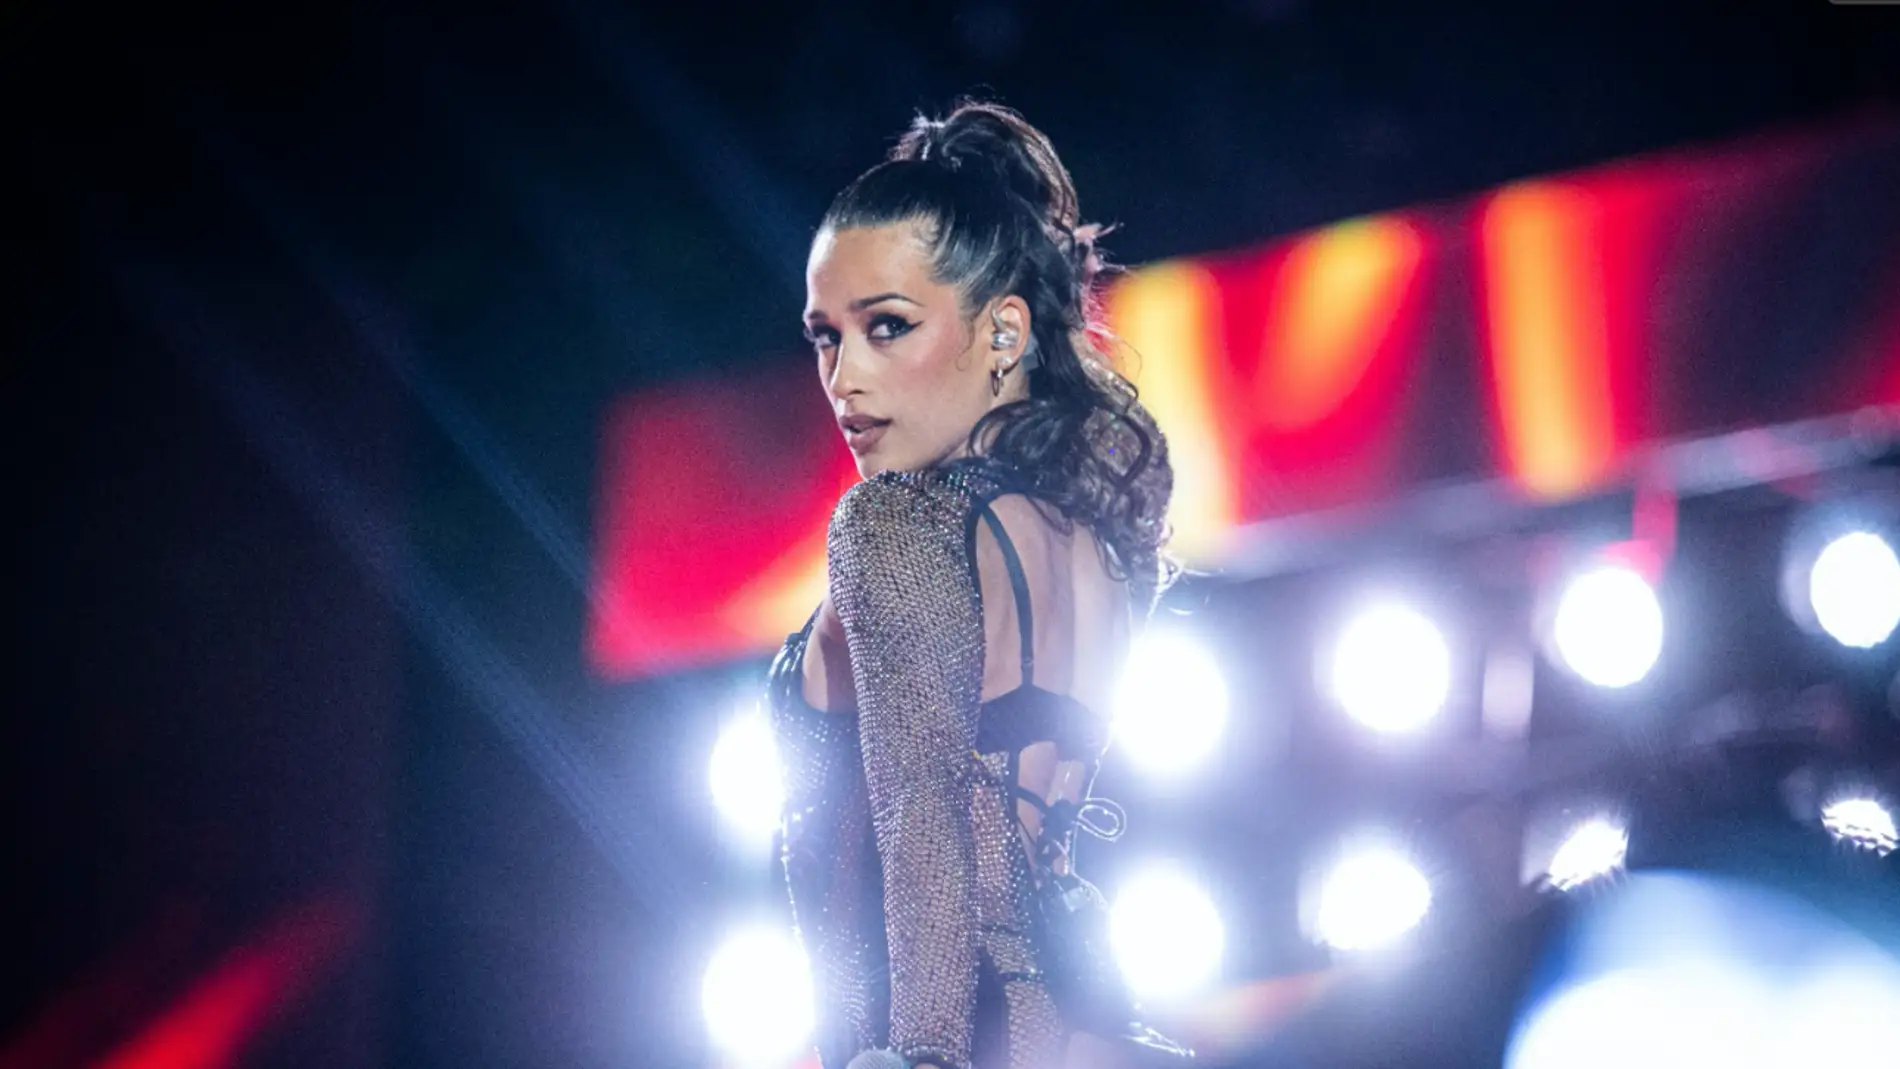 Eurovisión 2022: SloMo, la canción con la que Chanel Terrero representará a  España en Eurovisión